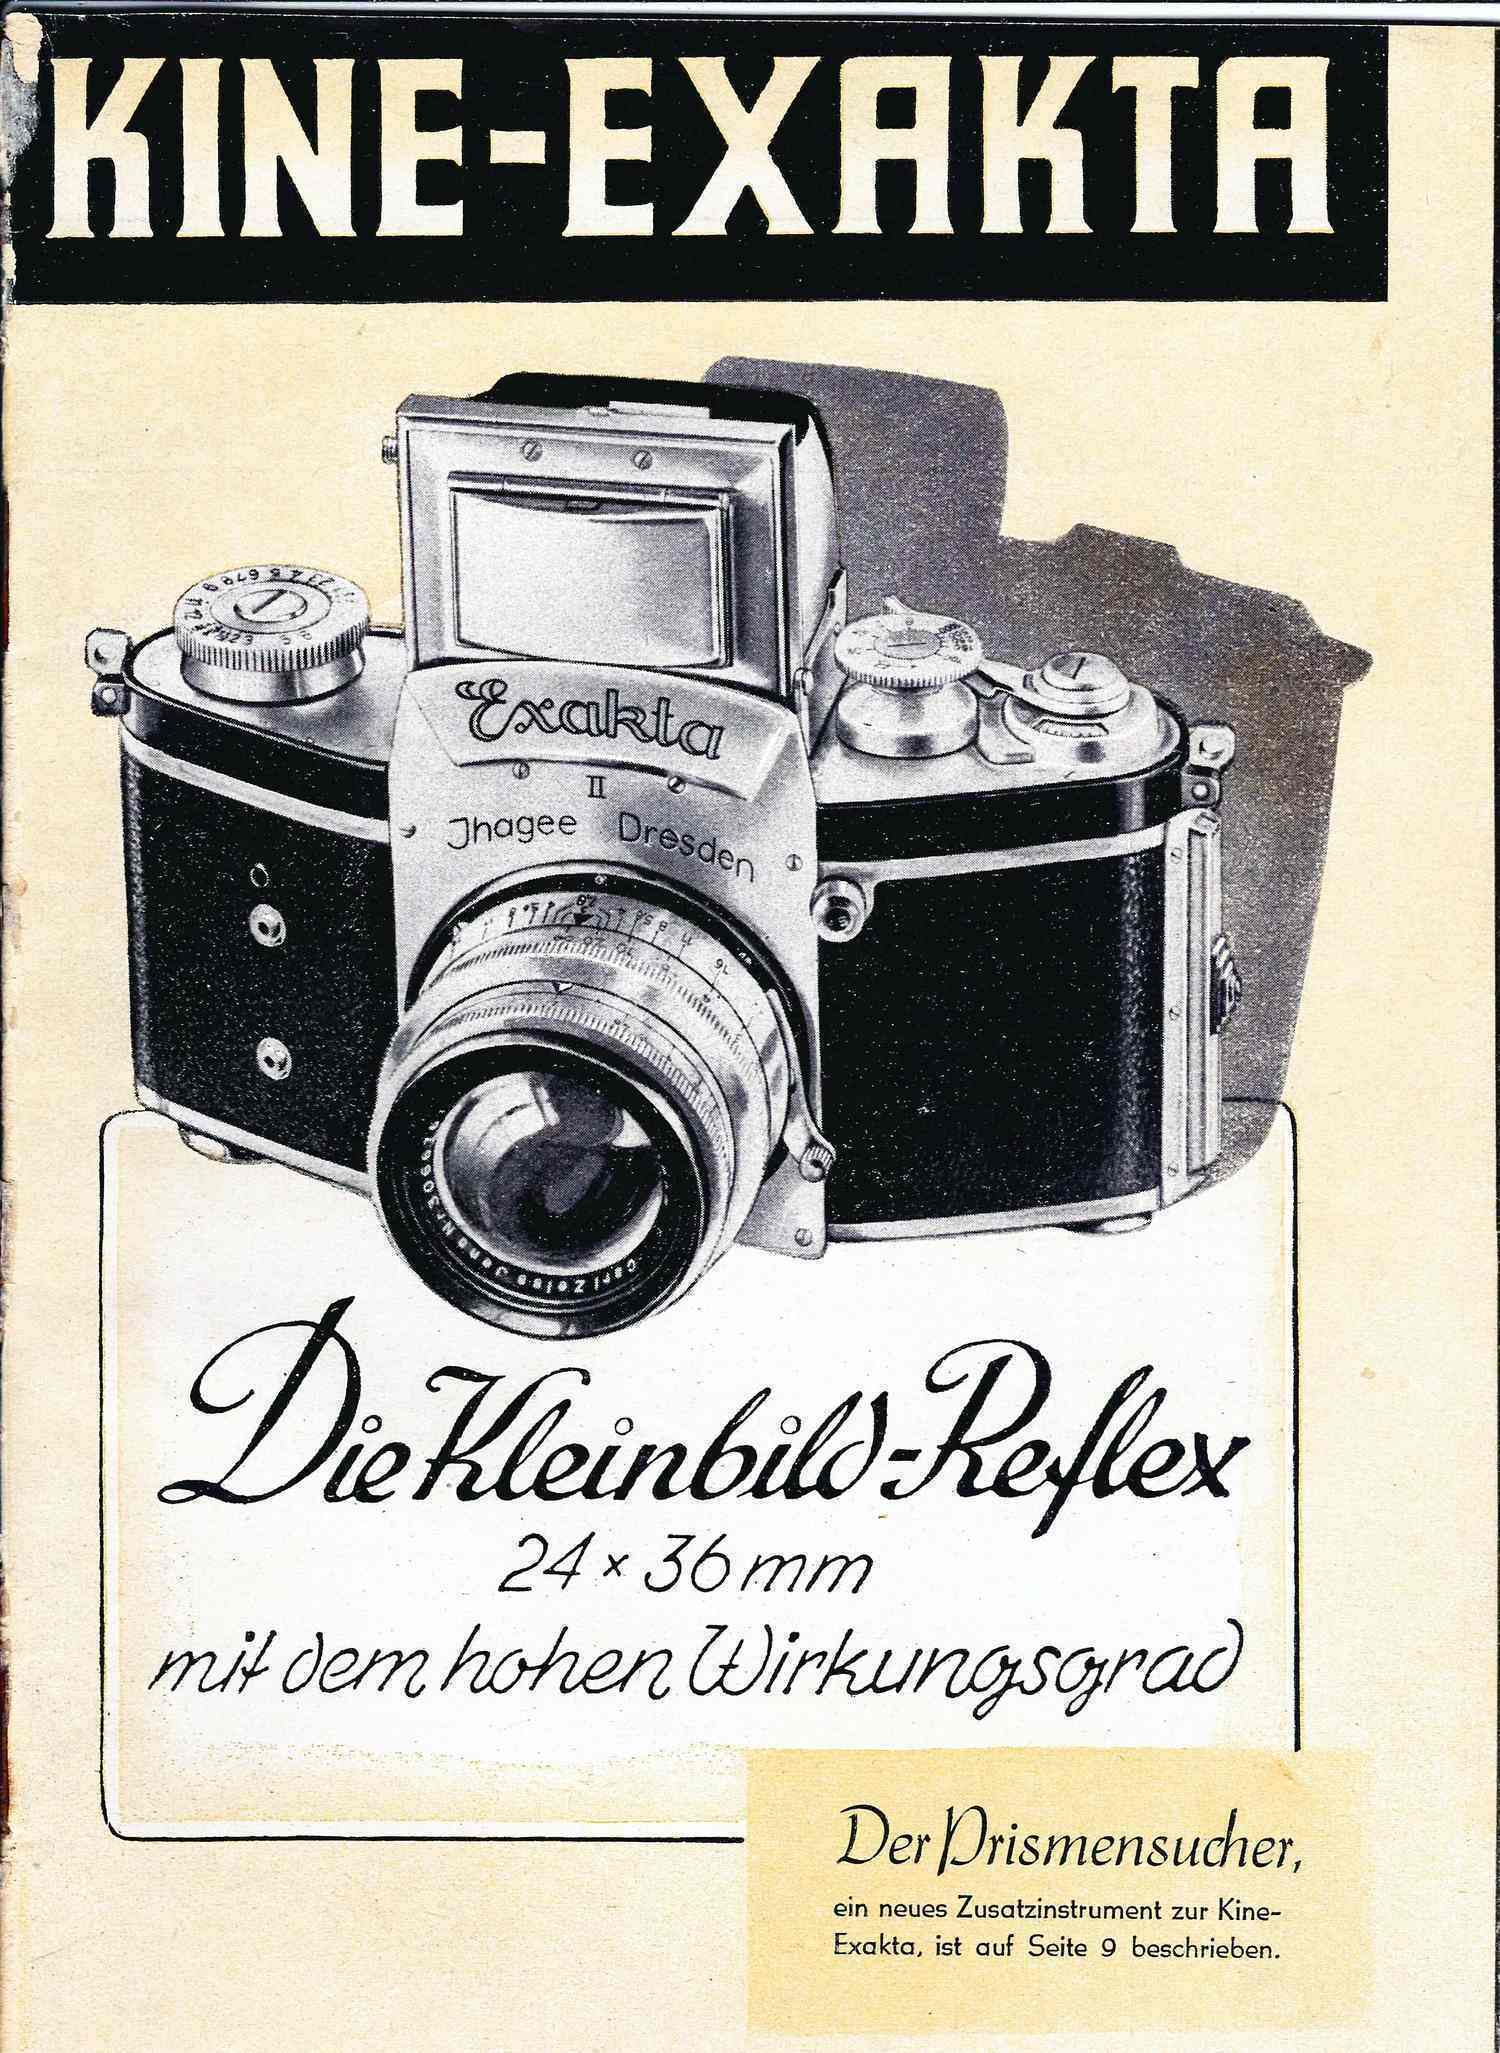 Рекламный проспект фотоаппарата «Кине-Экзакта». Германия, конец 1940-х годов.